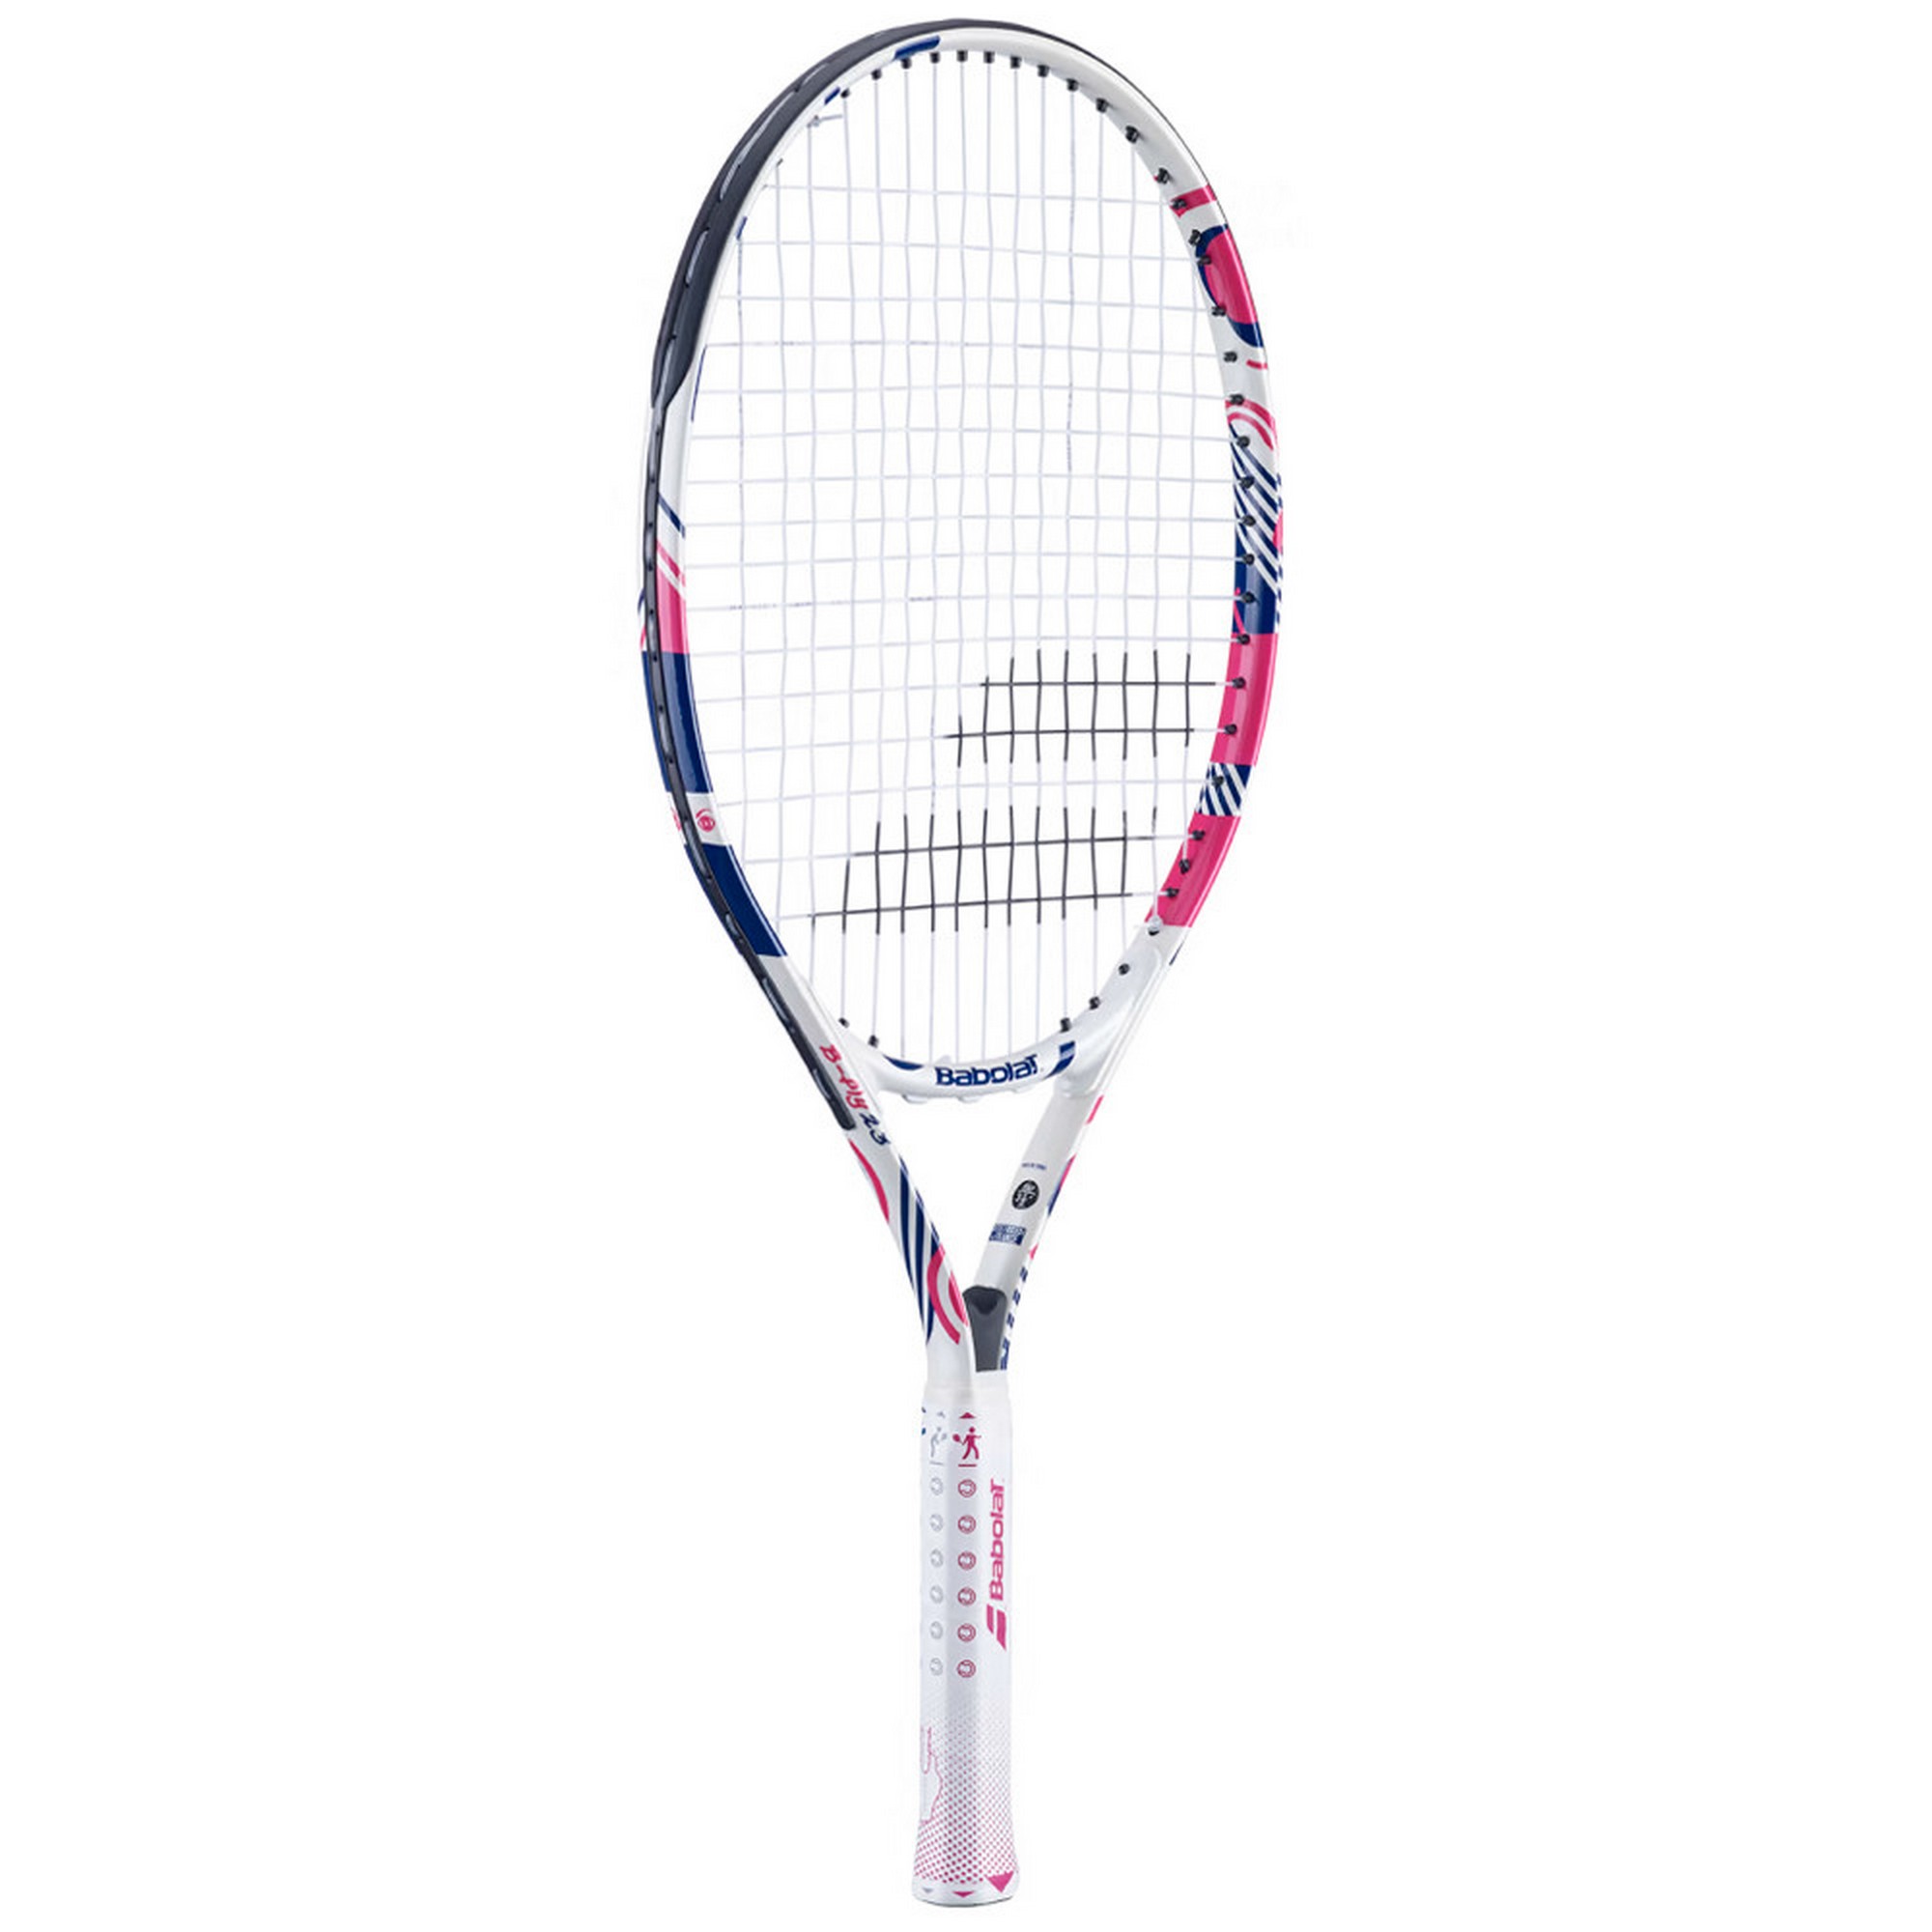 Ракетка для большого тенниса детская 7-9 лет Babolat B`FLY 23 Gr000 140486 бело-розовый 2000_2000